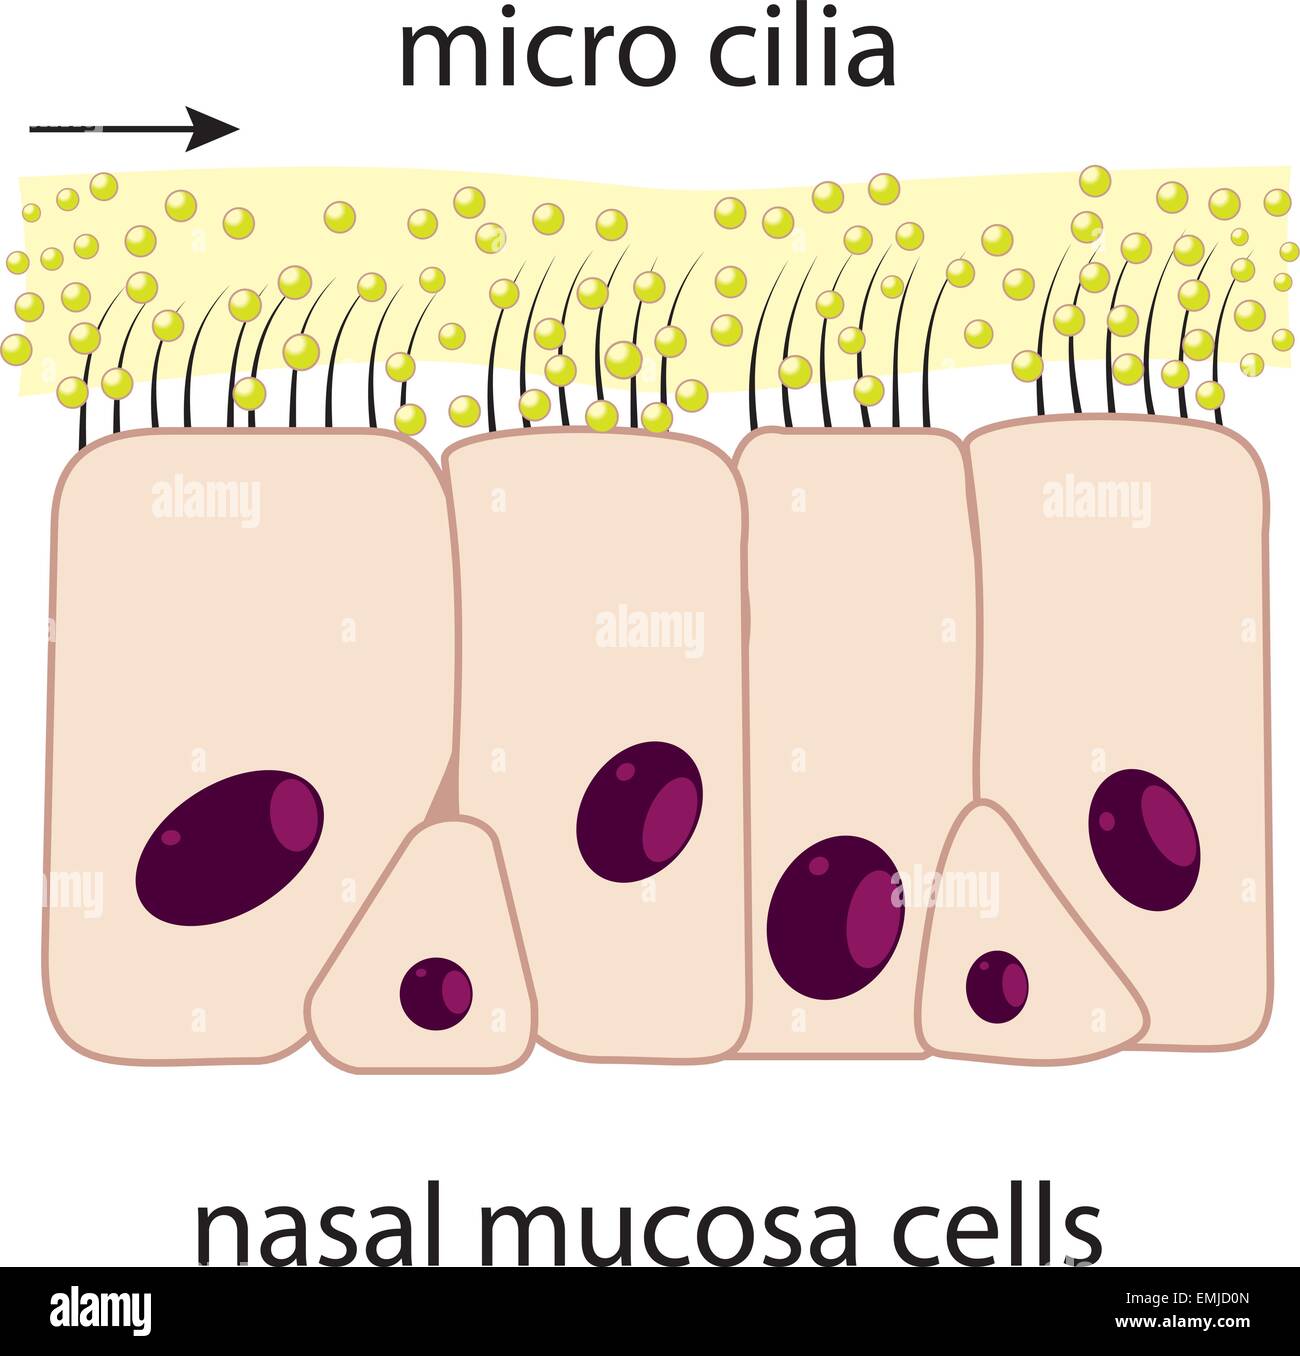 Nasal mucosa cells and micro cilia vector scheme Stock Vector